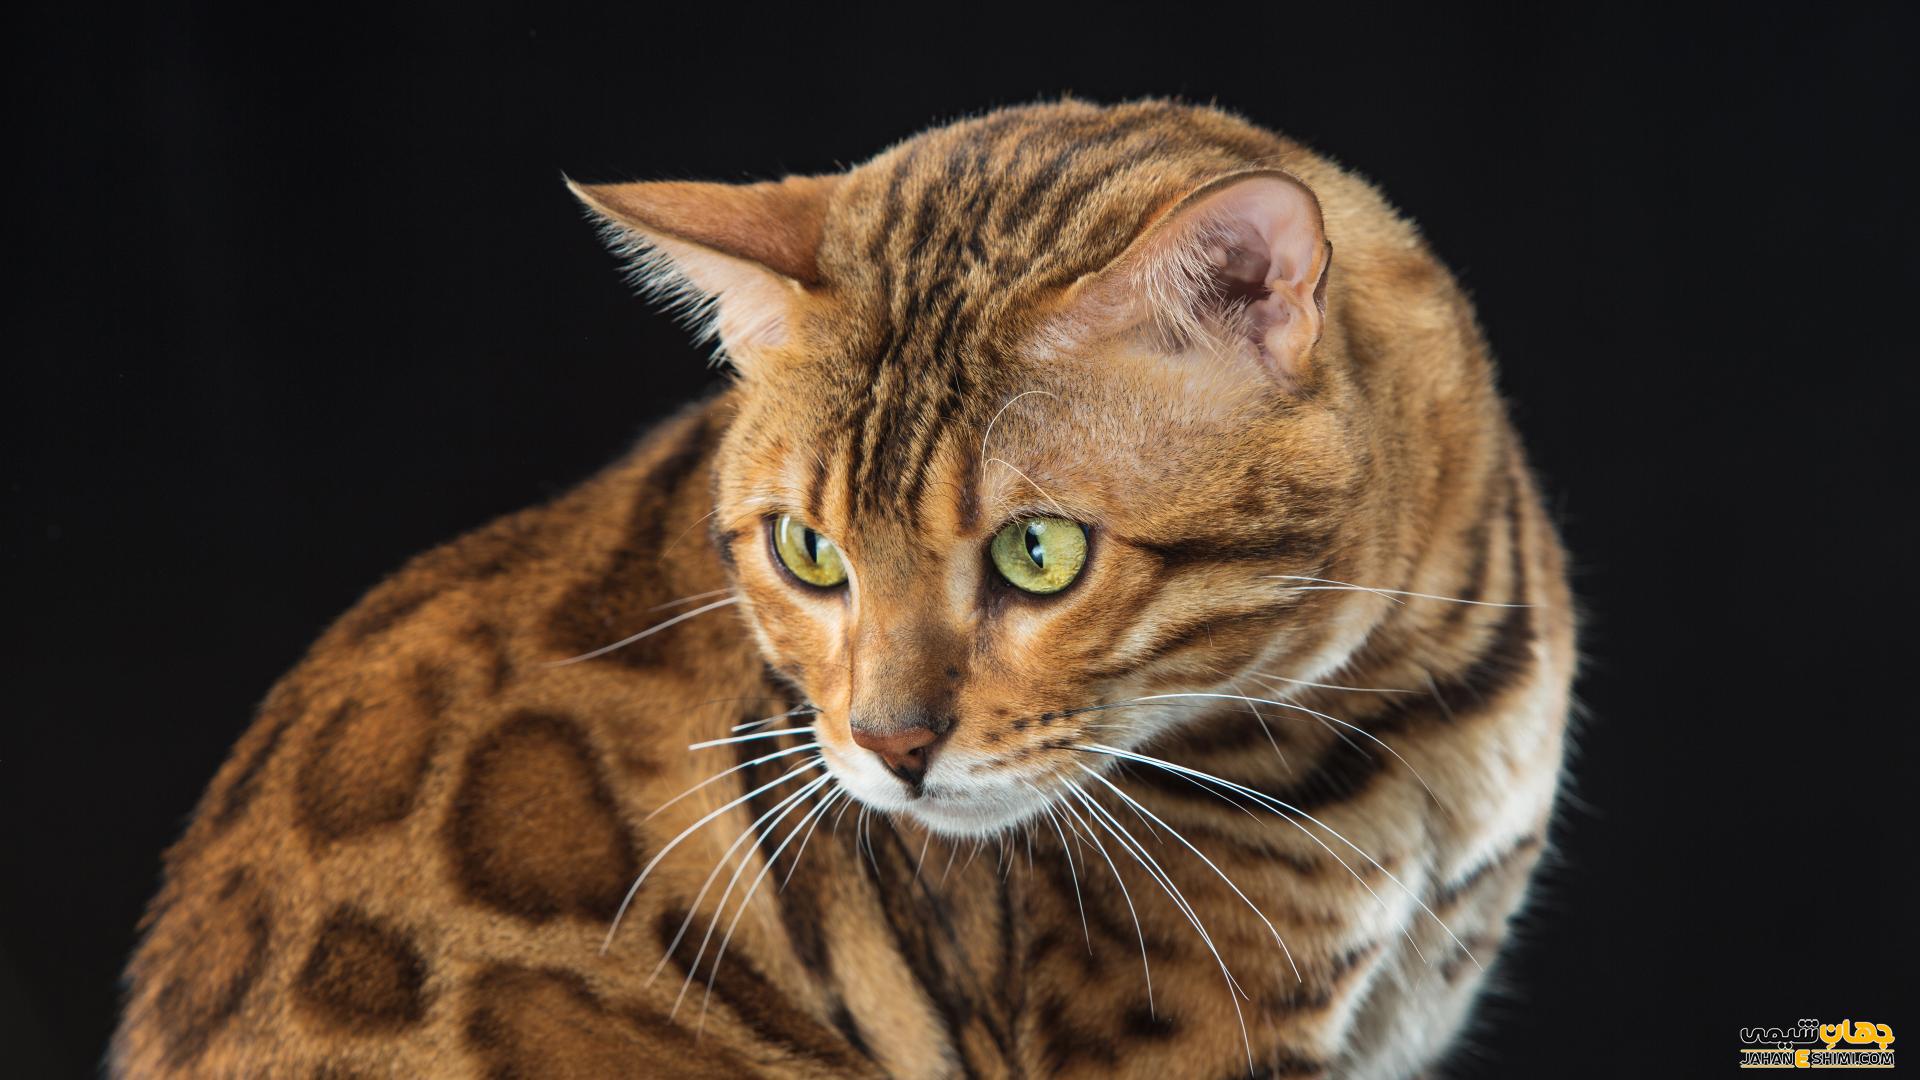 گربه نژاد بنگال (Bengal Cat) چه ویژگی هایی دارد؟ قیمت خرید